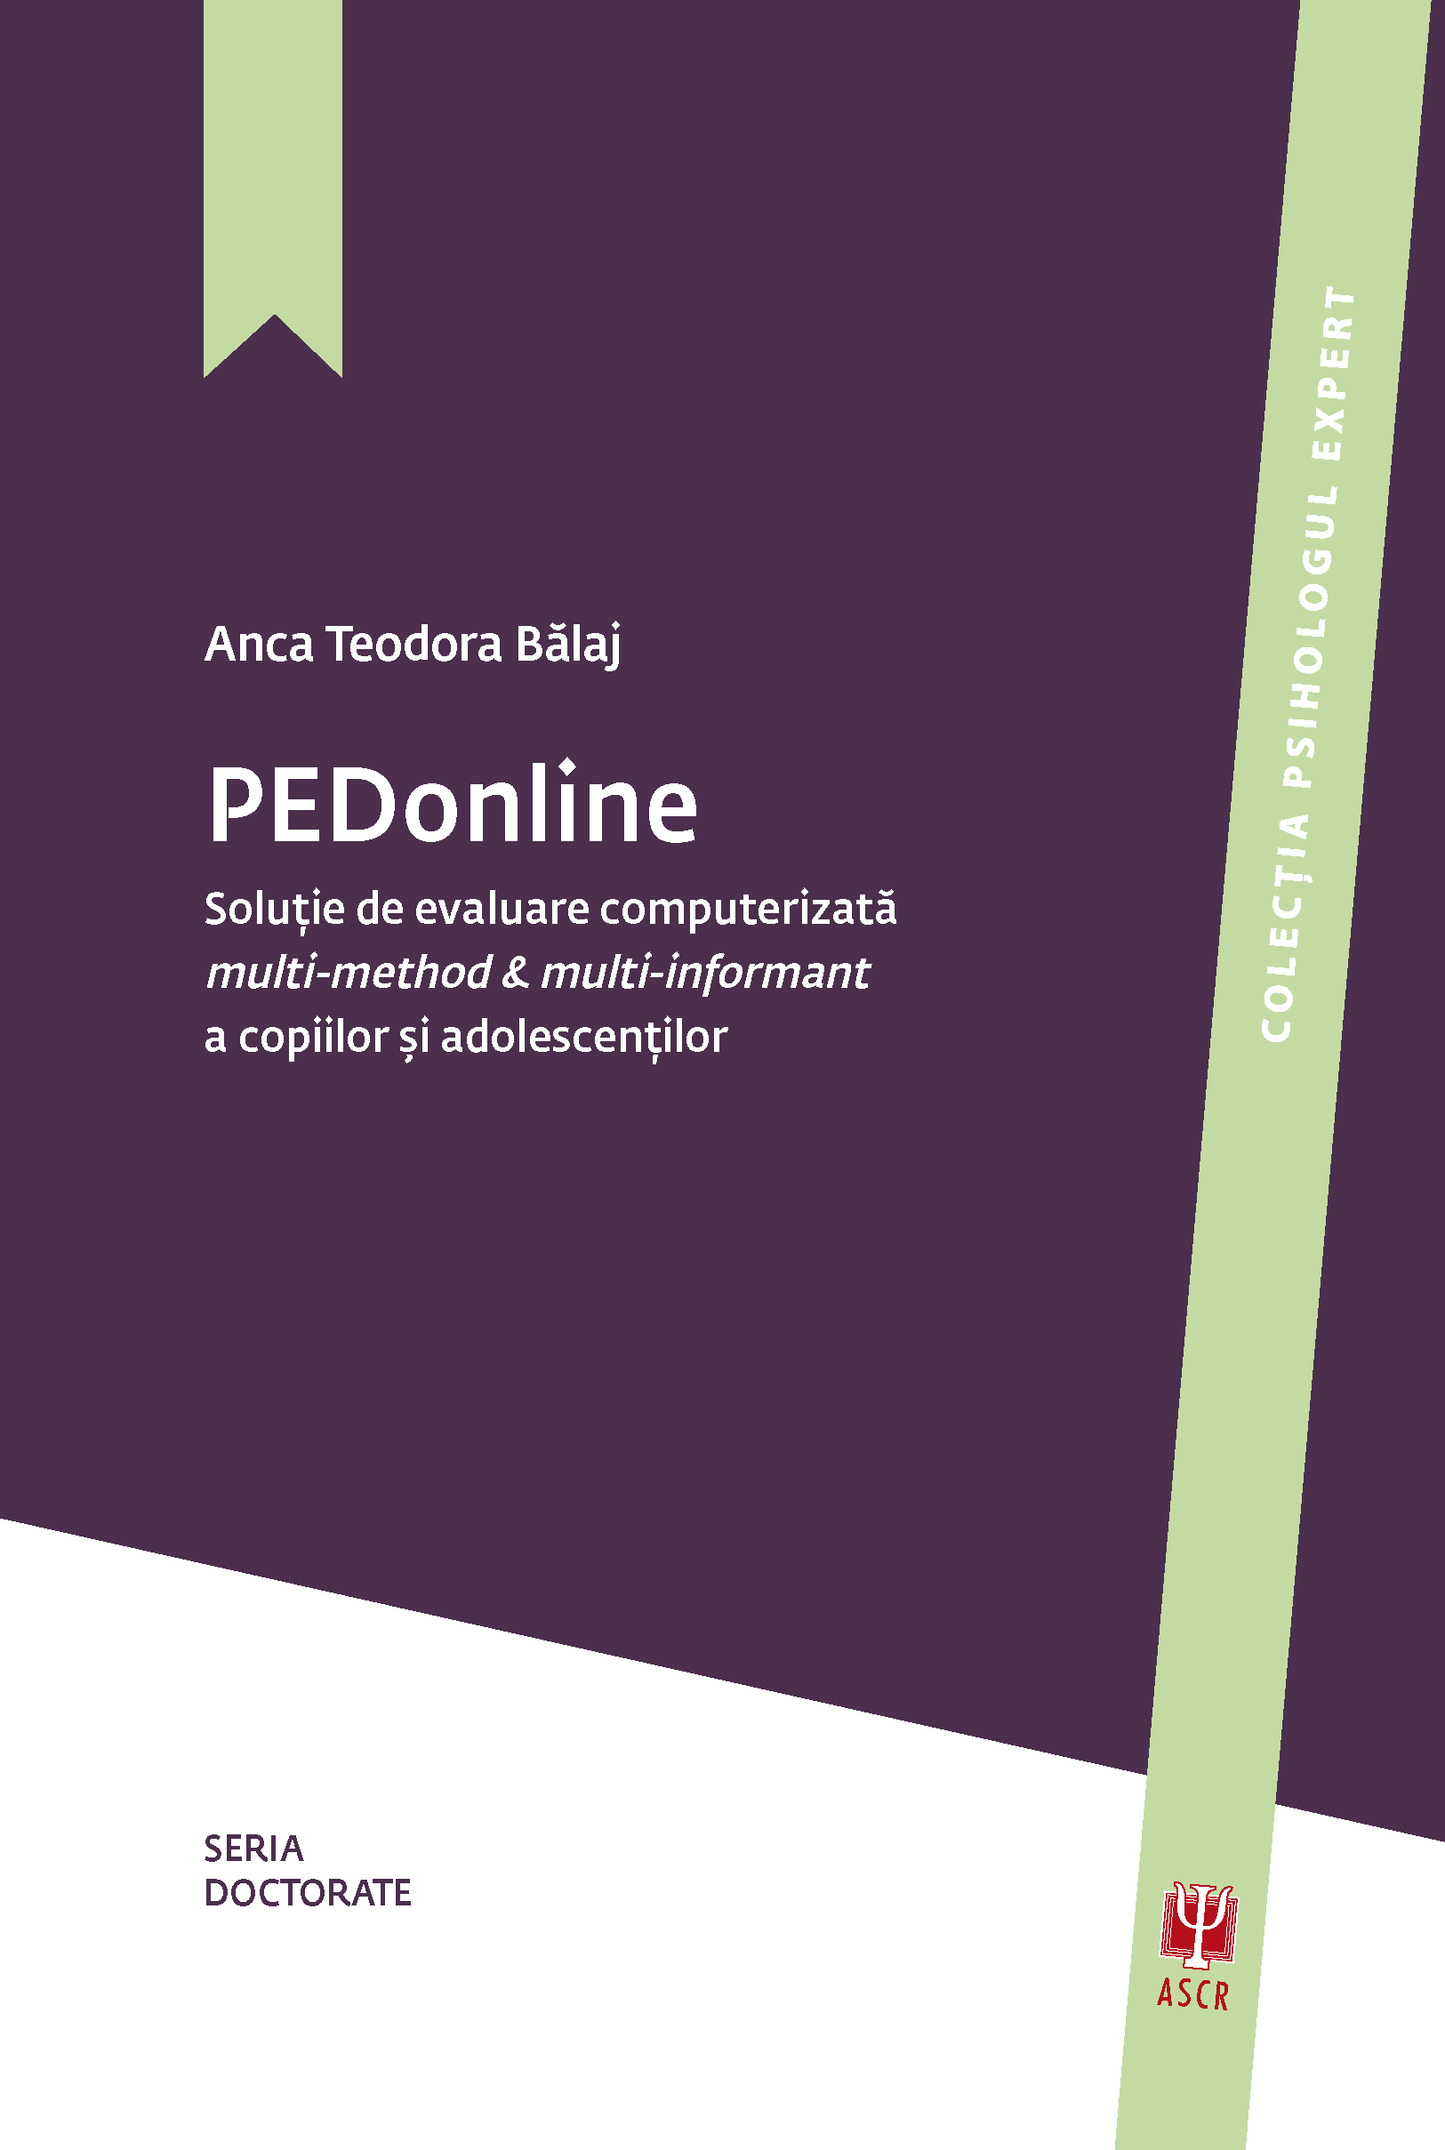 PEDonline, soluție de evaluare computerizată multi-method & multi-informant a copiilor și adolescenților